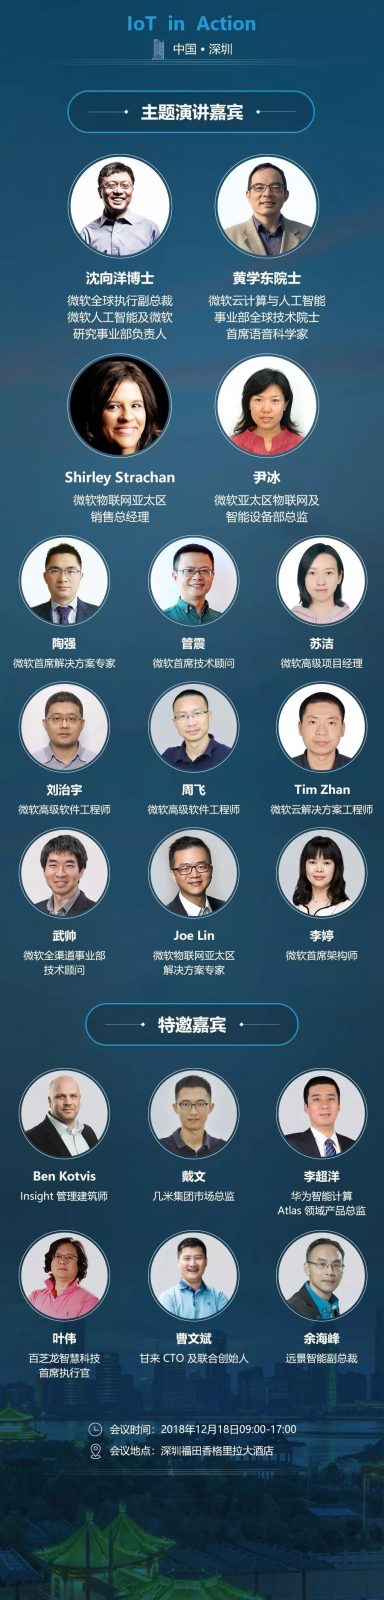 2018微软深圳IoT in Action大会